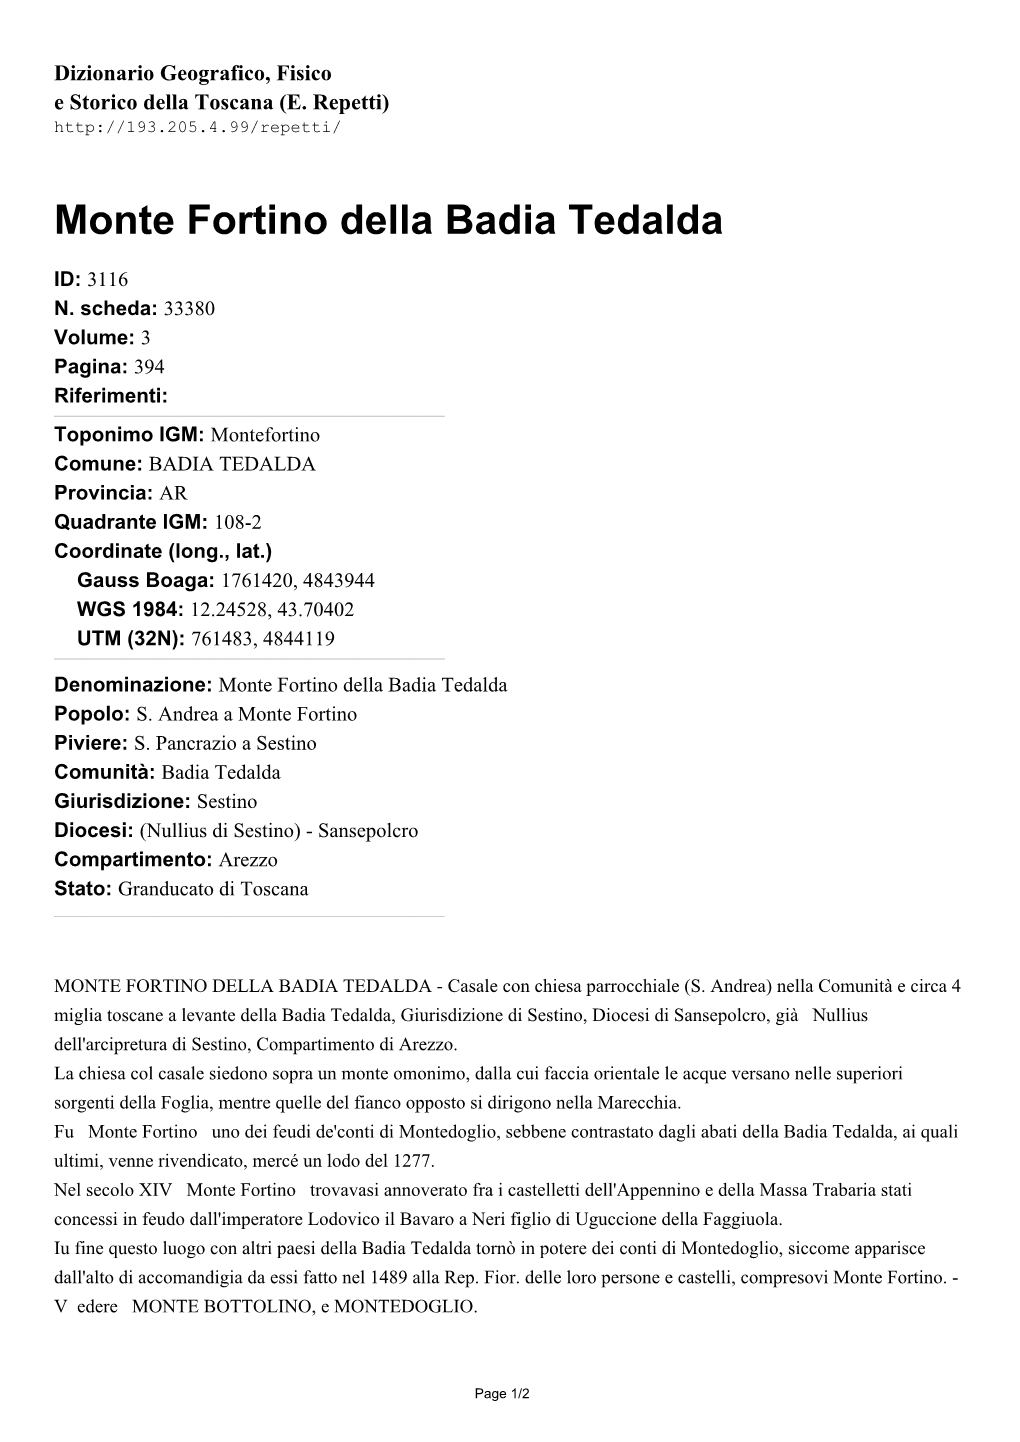 Monte Fortino Della Badia Tedalda